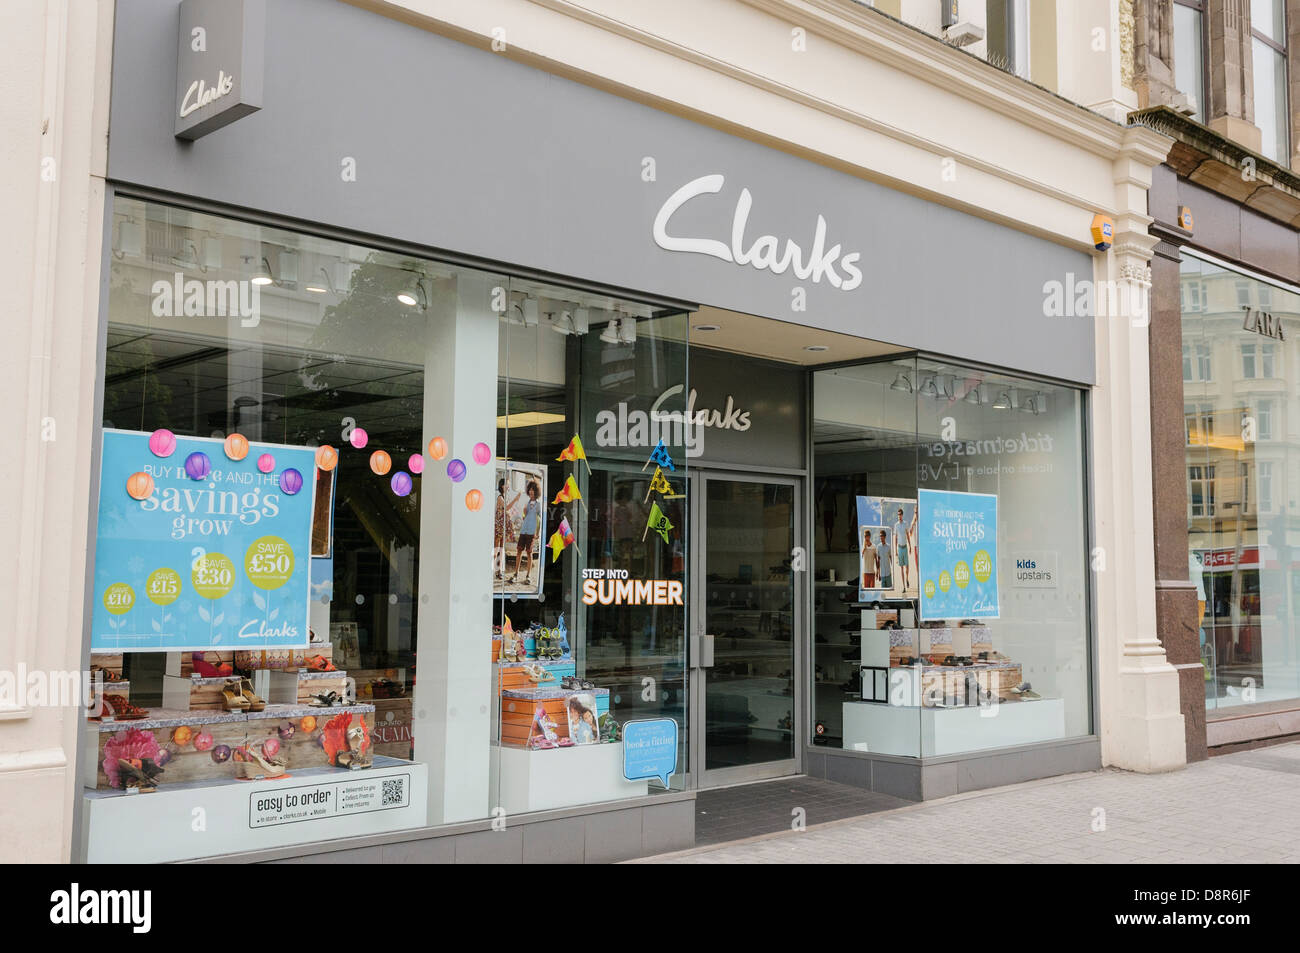 Clarks shoe shop Stock Photo